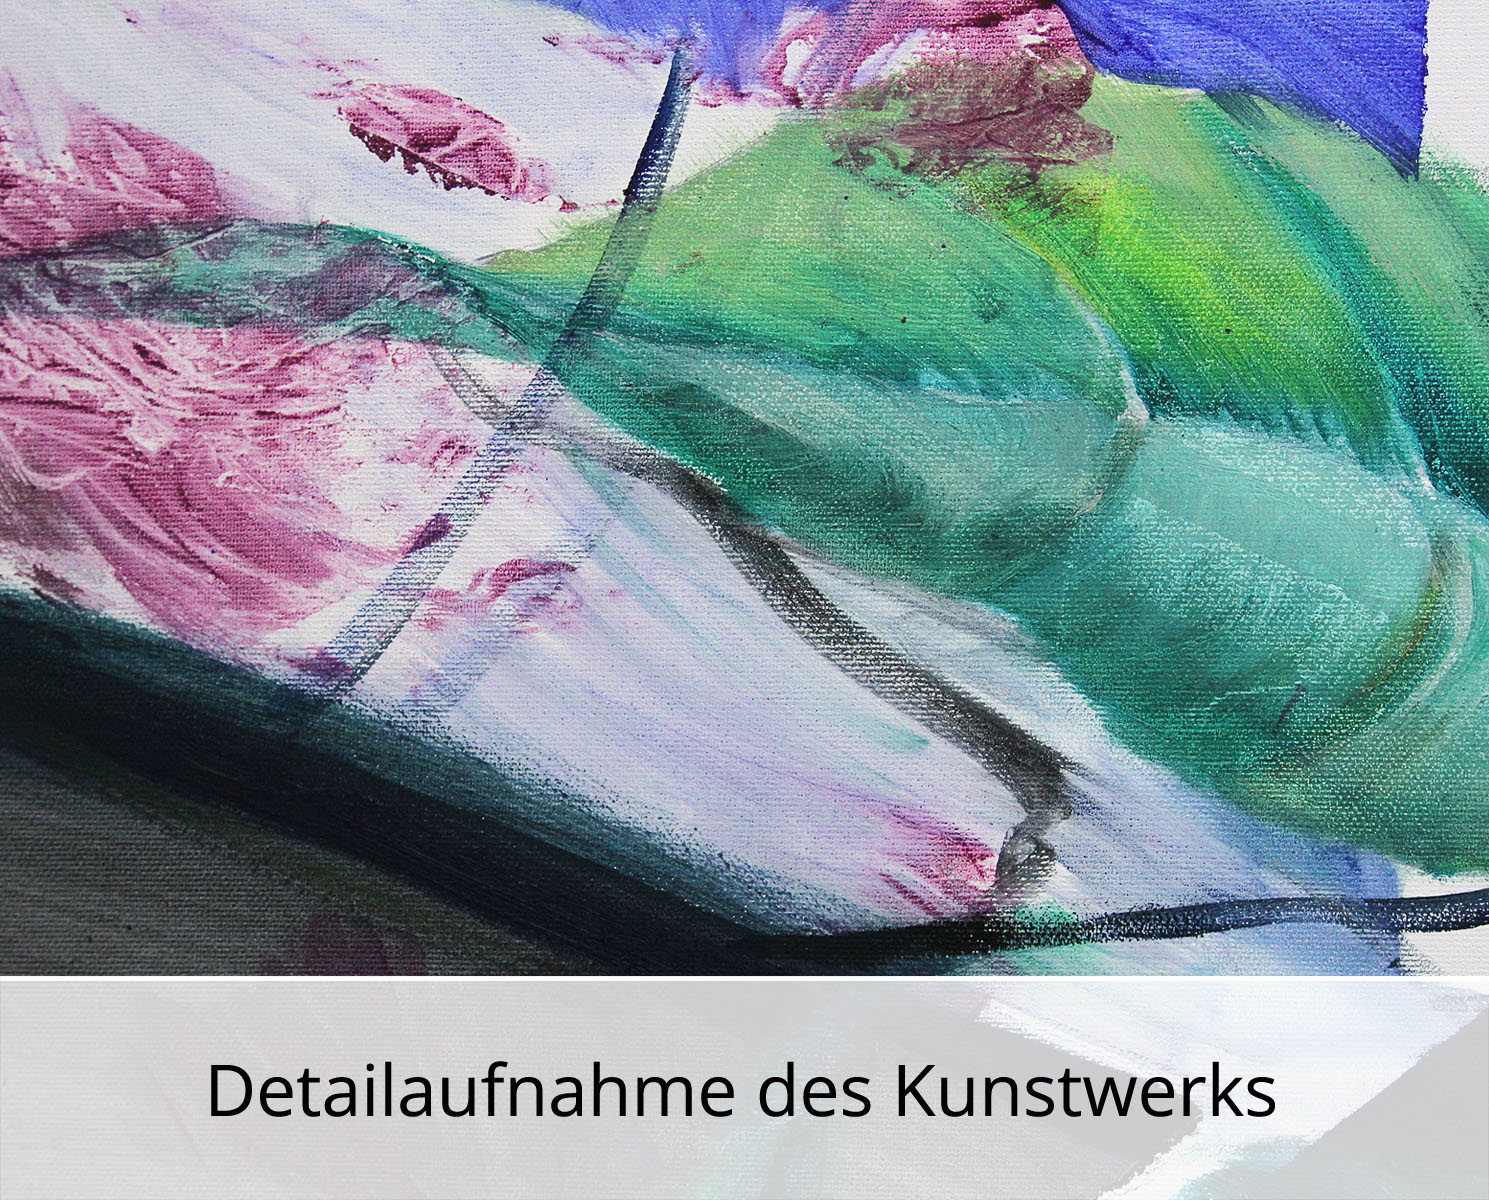 D. Block: "Die Essenz", Original/Unikat, zeitgenössische Acryl- und Ölmalerei